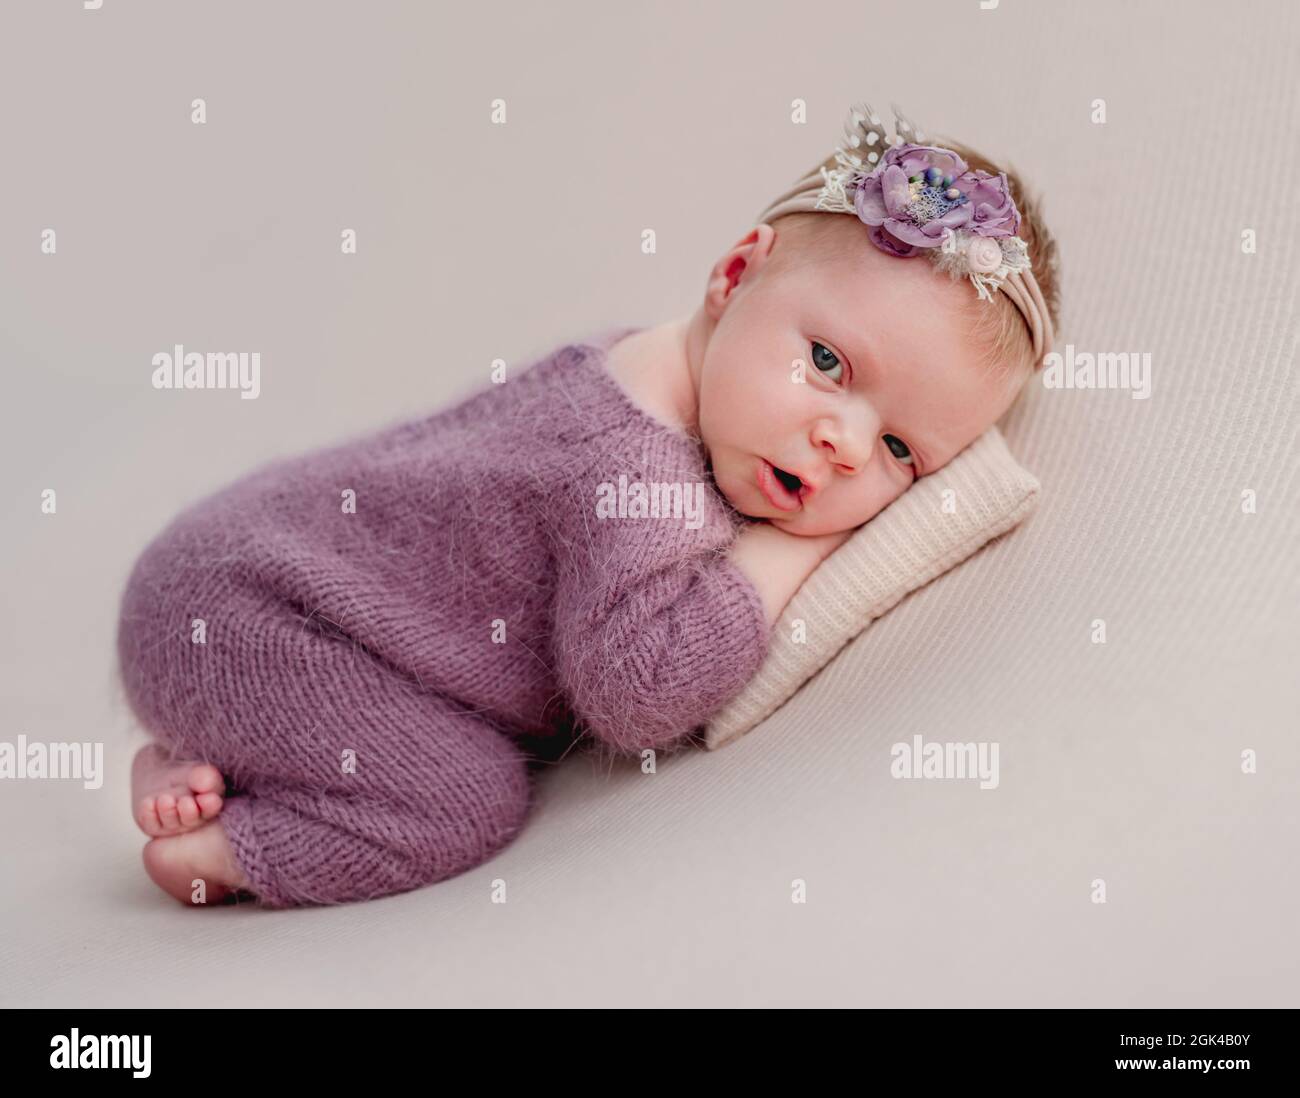 Despierta niña recién nacida con un diadem de flores tumbado en una pequeña almohada Foto de stock